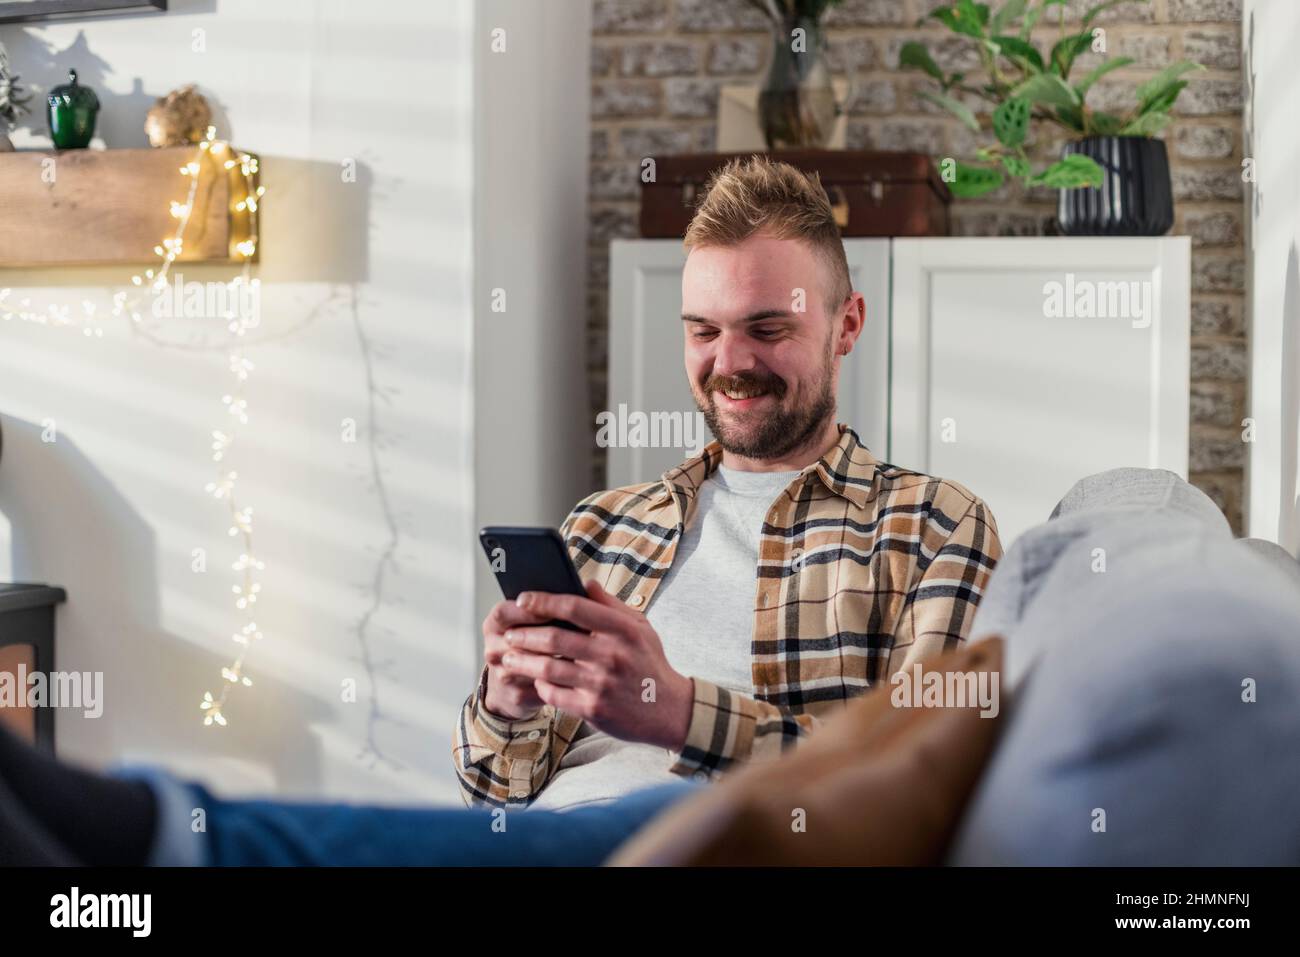 Vue de face d'un jeune homme allongé sur son canapé dans son salon relaxant, il utilise son smartphone. Banque D'Images